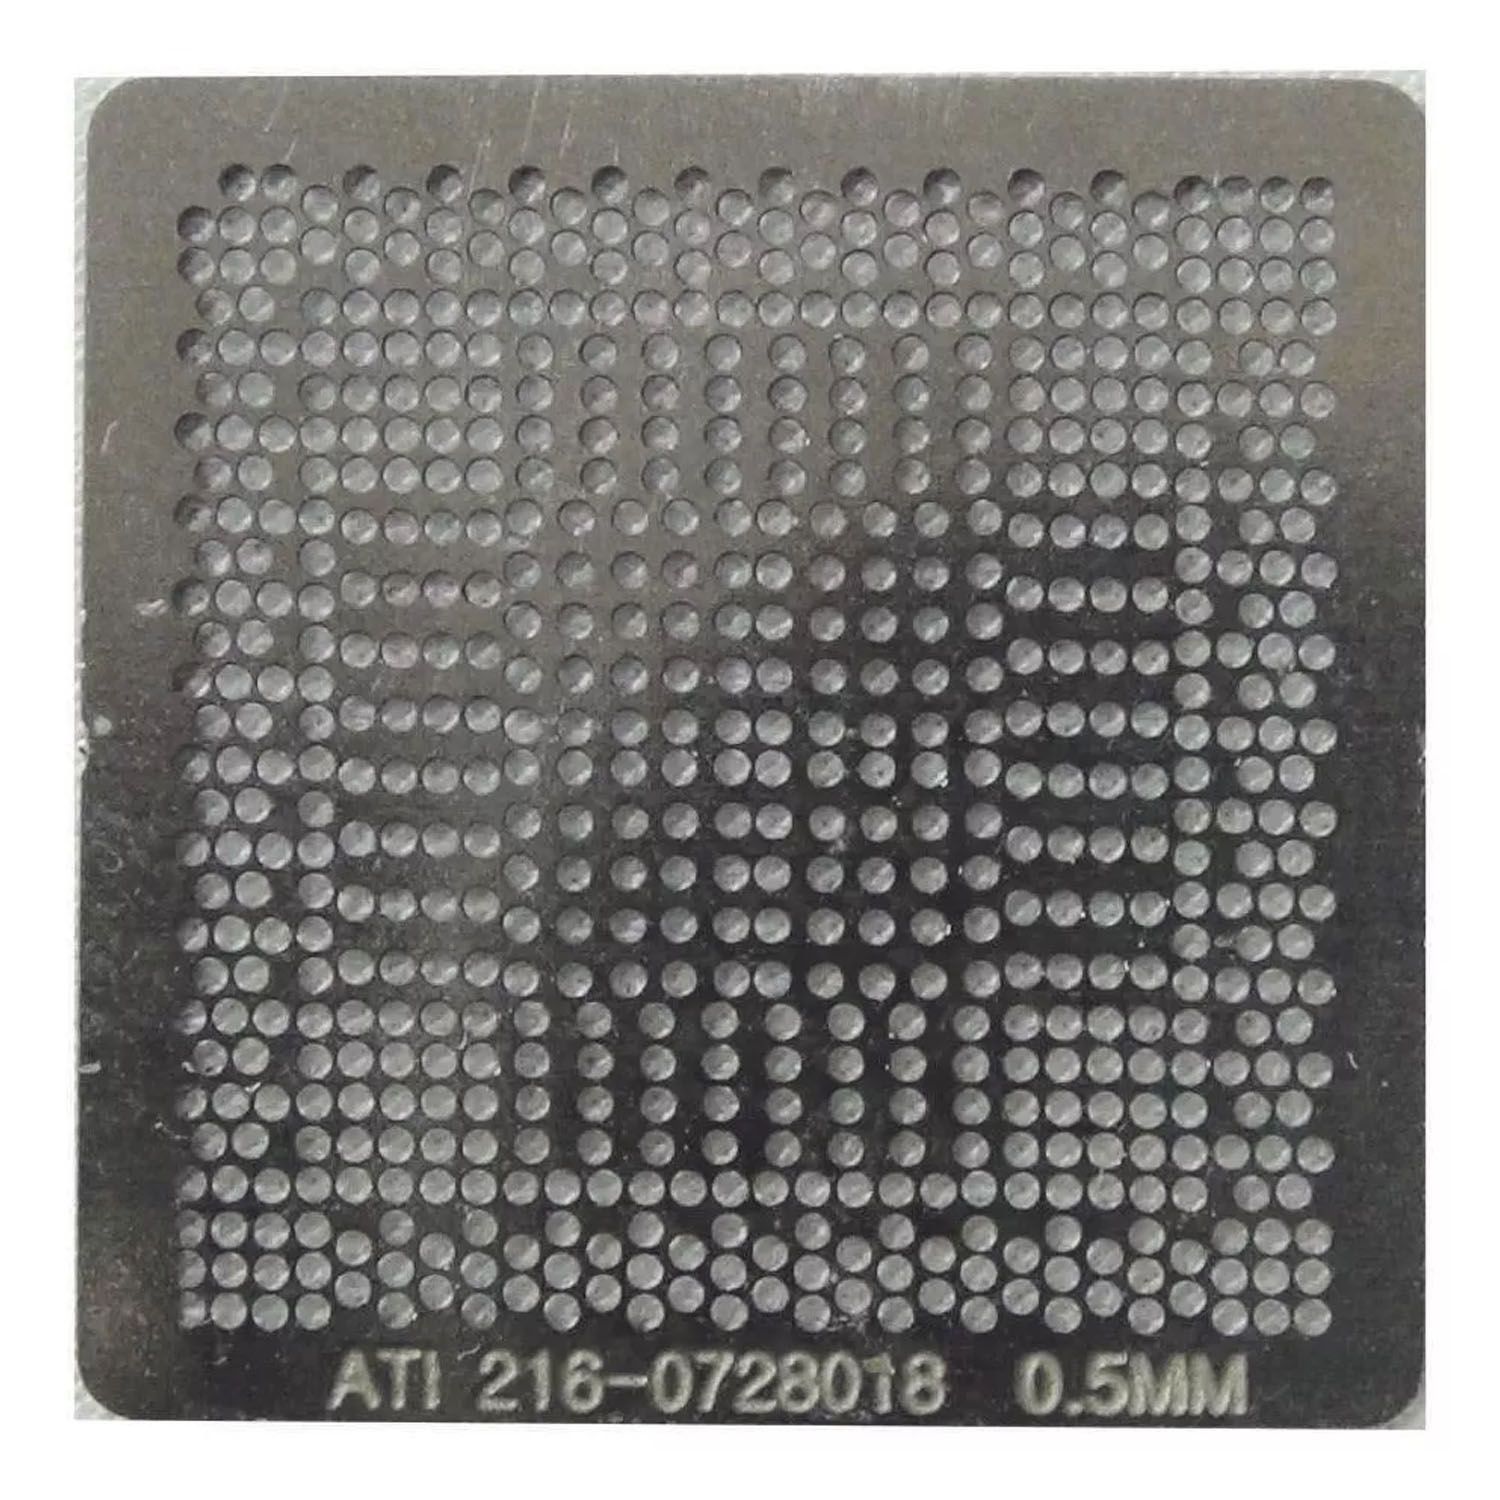 Estencil 216-0728018 0749001 Stencil Calor Direto 0,5mm - G22